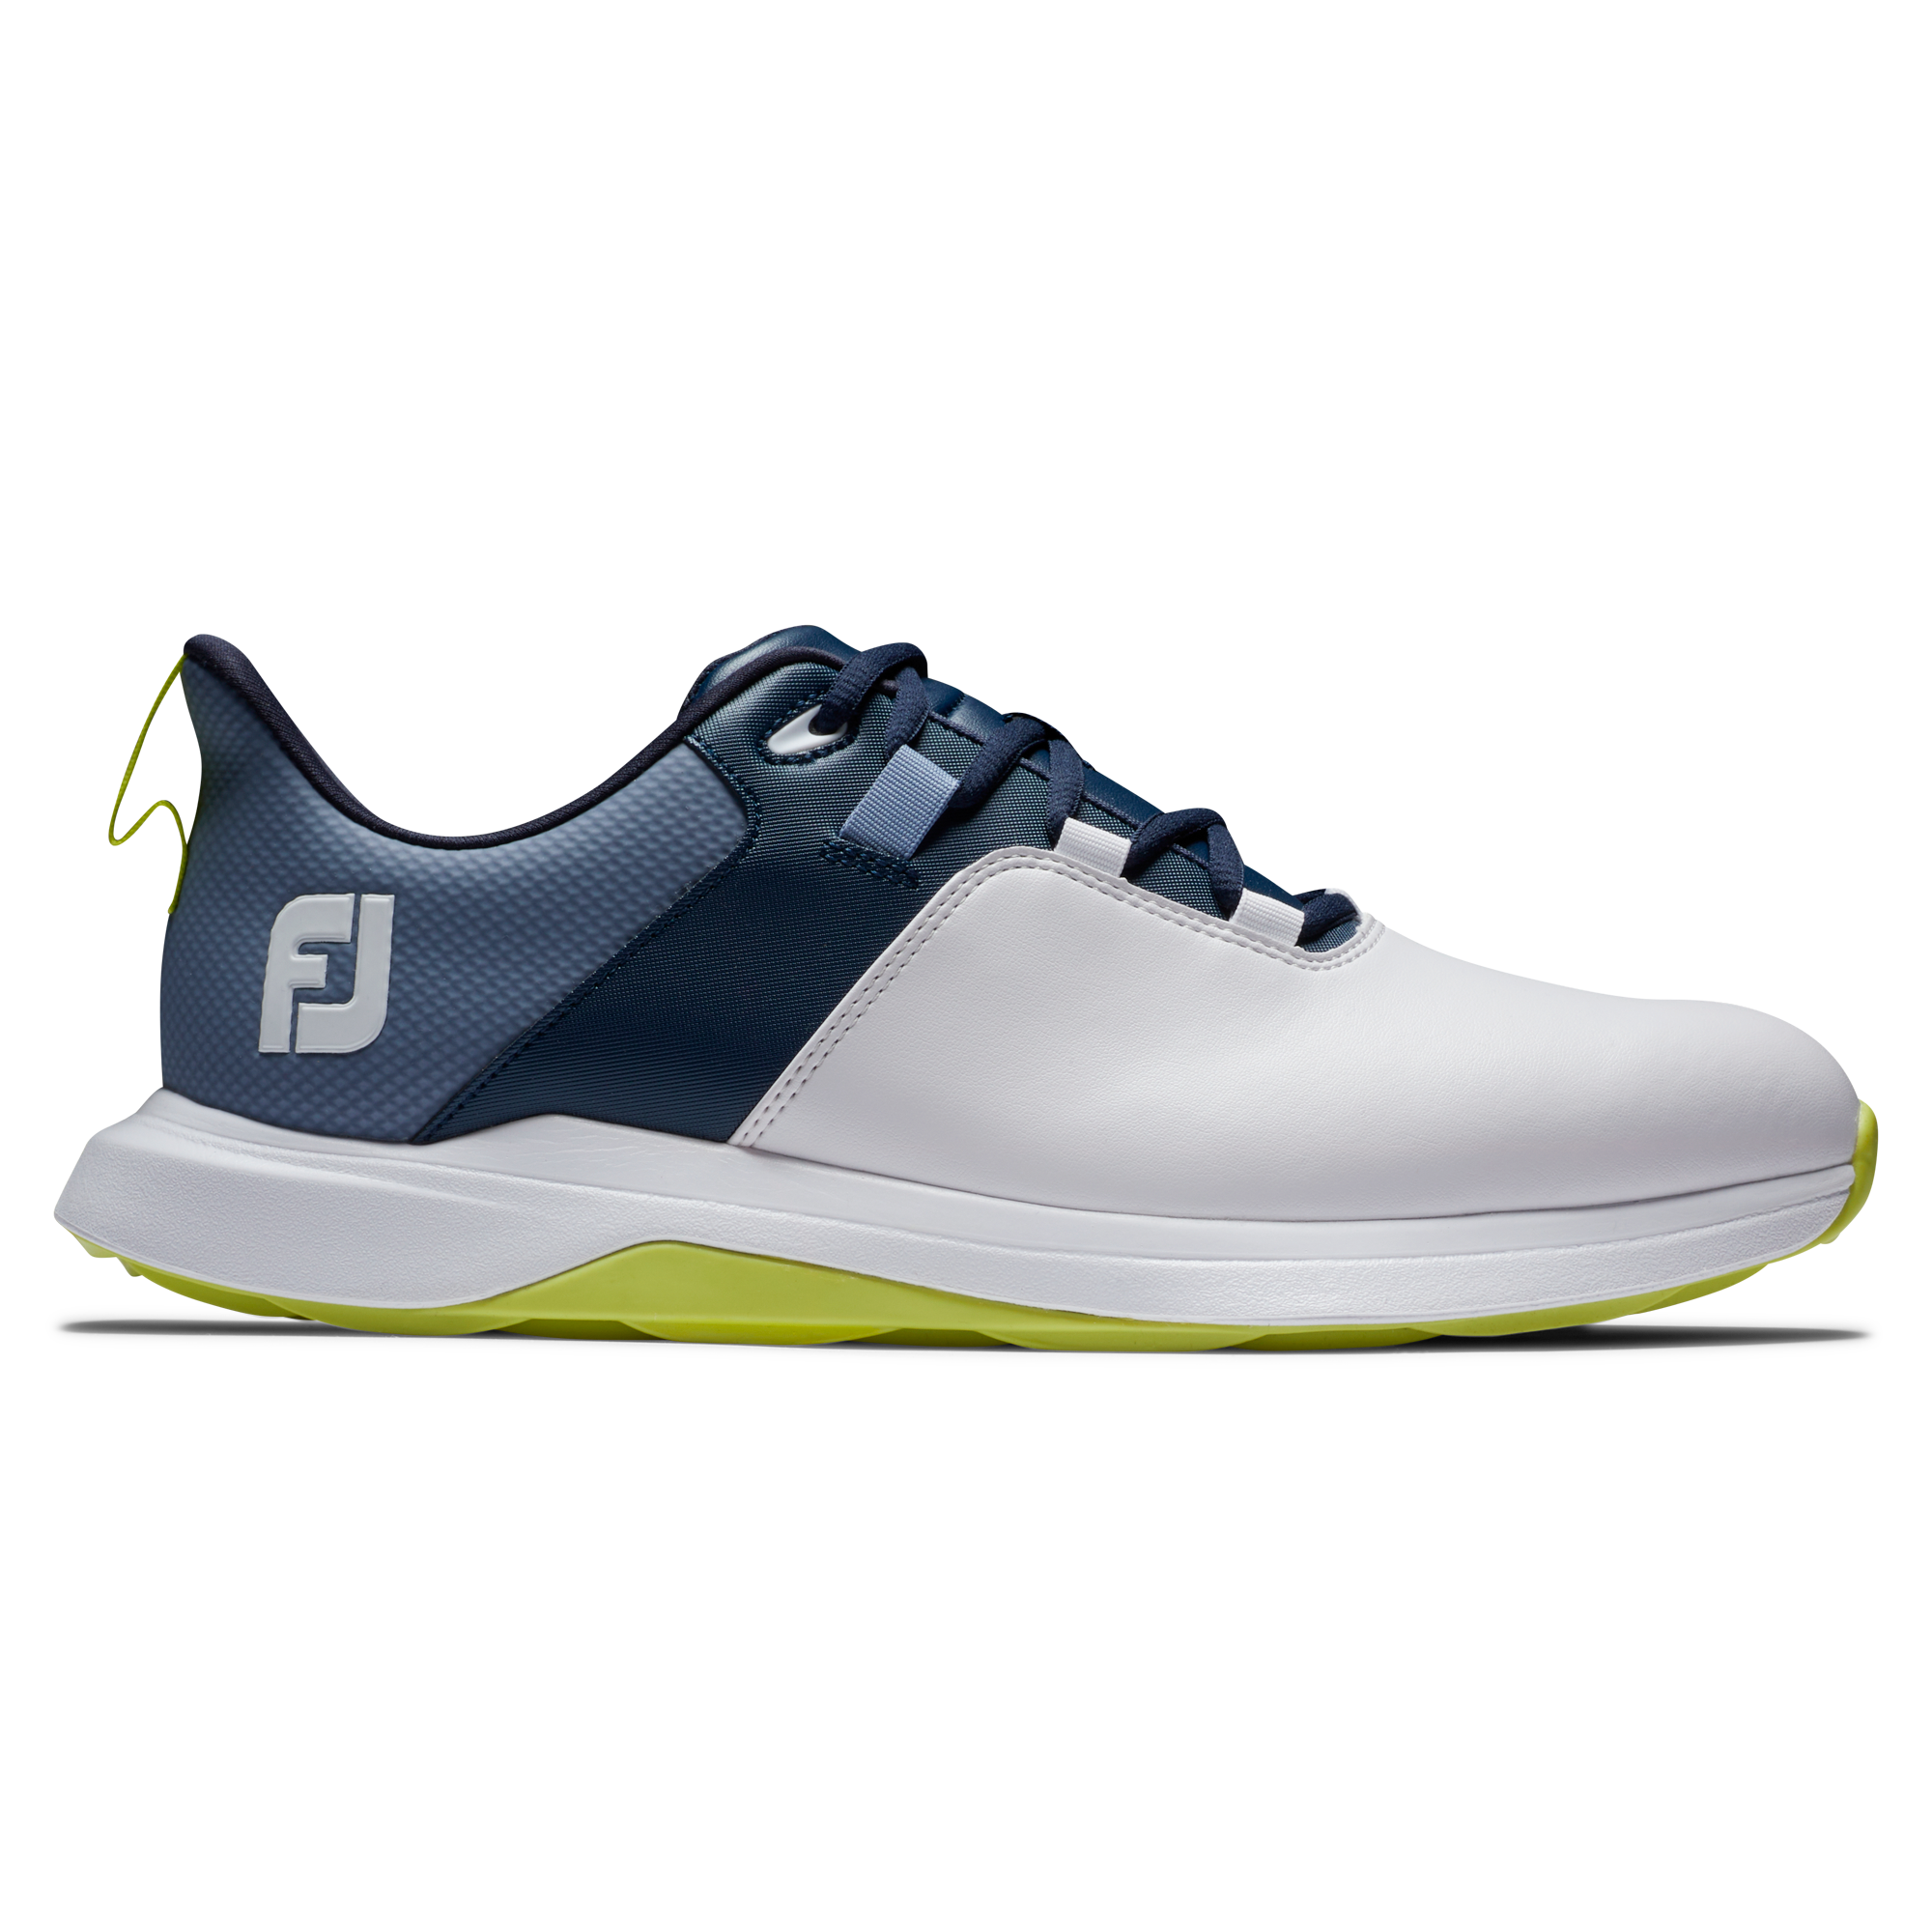 FootJoy ProLite pánské golfové boty, bílé/tmavě modré, vel. 7,5 UK